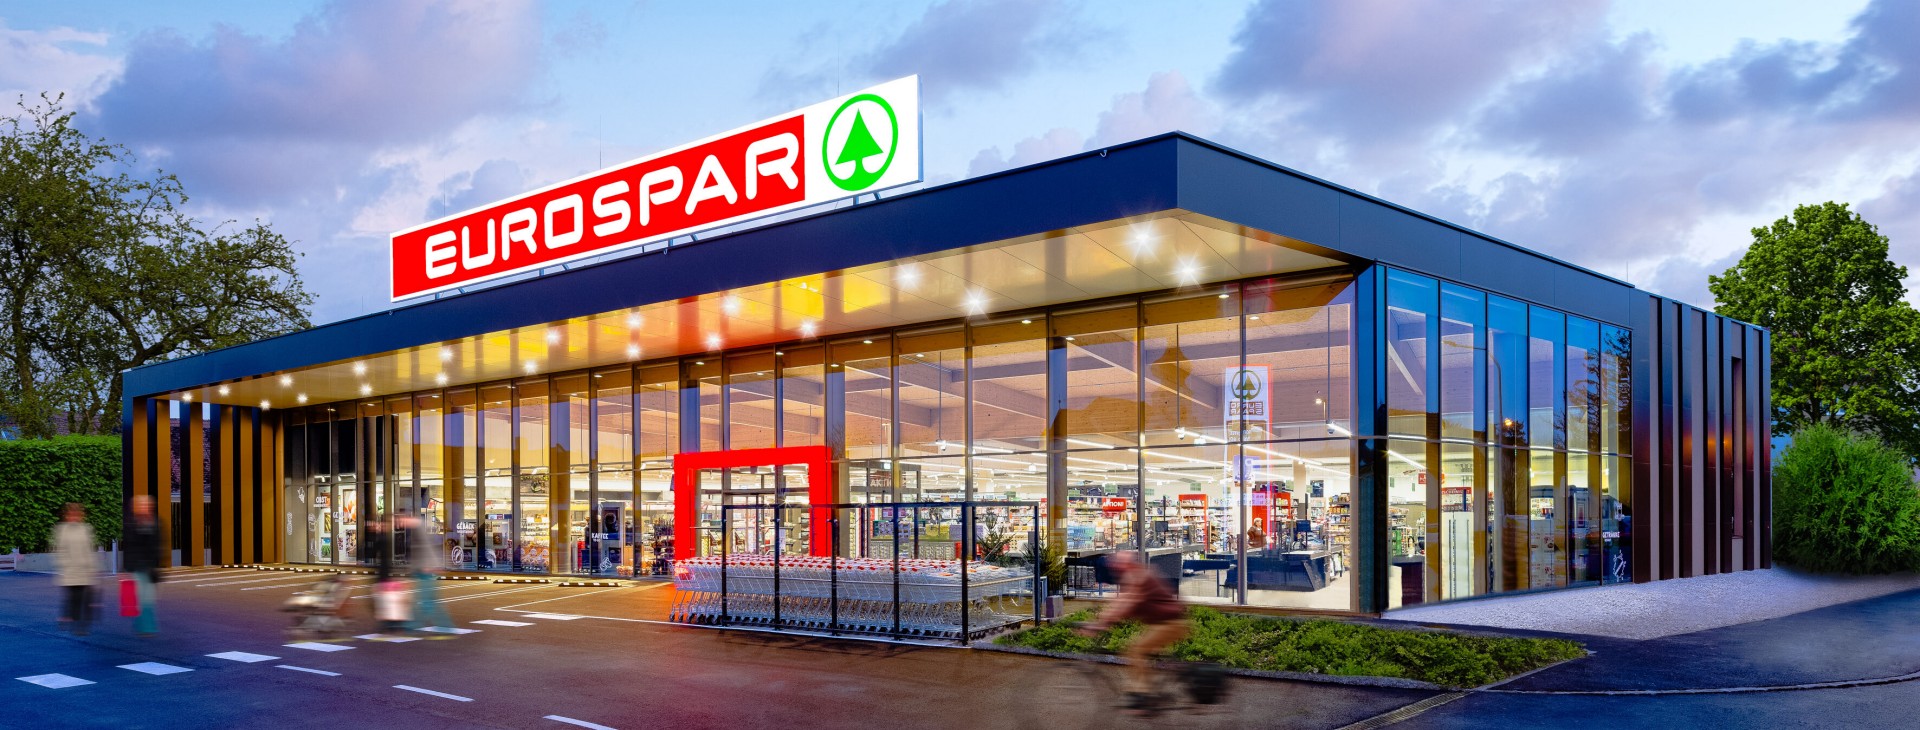 EUROSPAR Supermarkt Pottendorf Niederösterreich